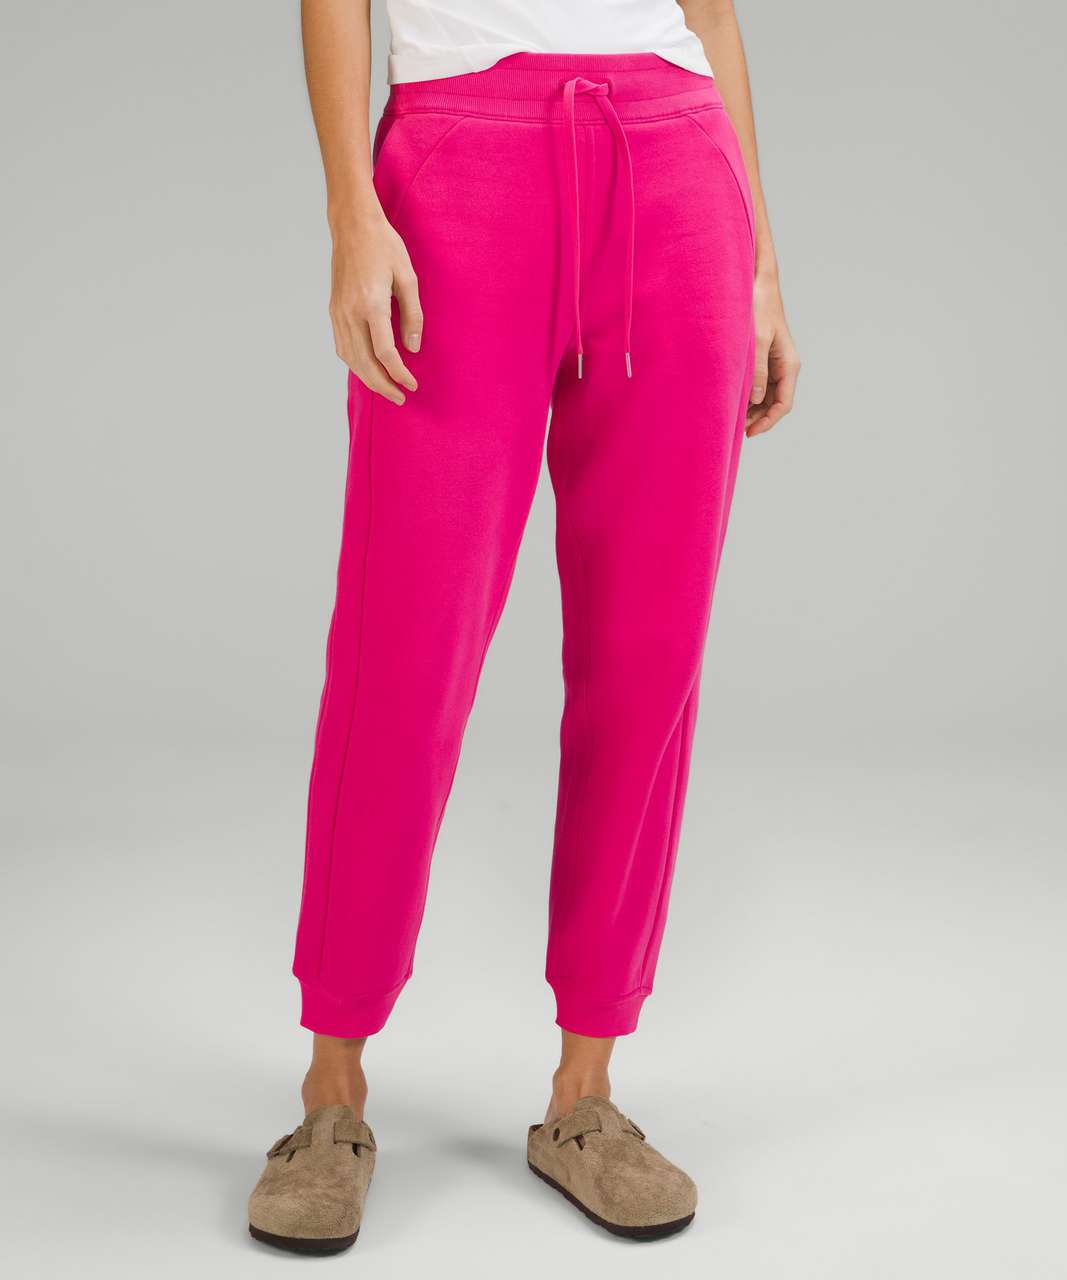 lululemon athletica, Pants & Jumpsuits, Womens Lululemon Pink Speckle  Joggers Size